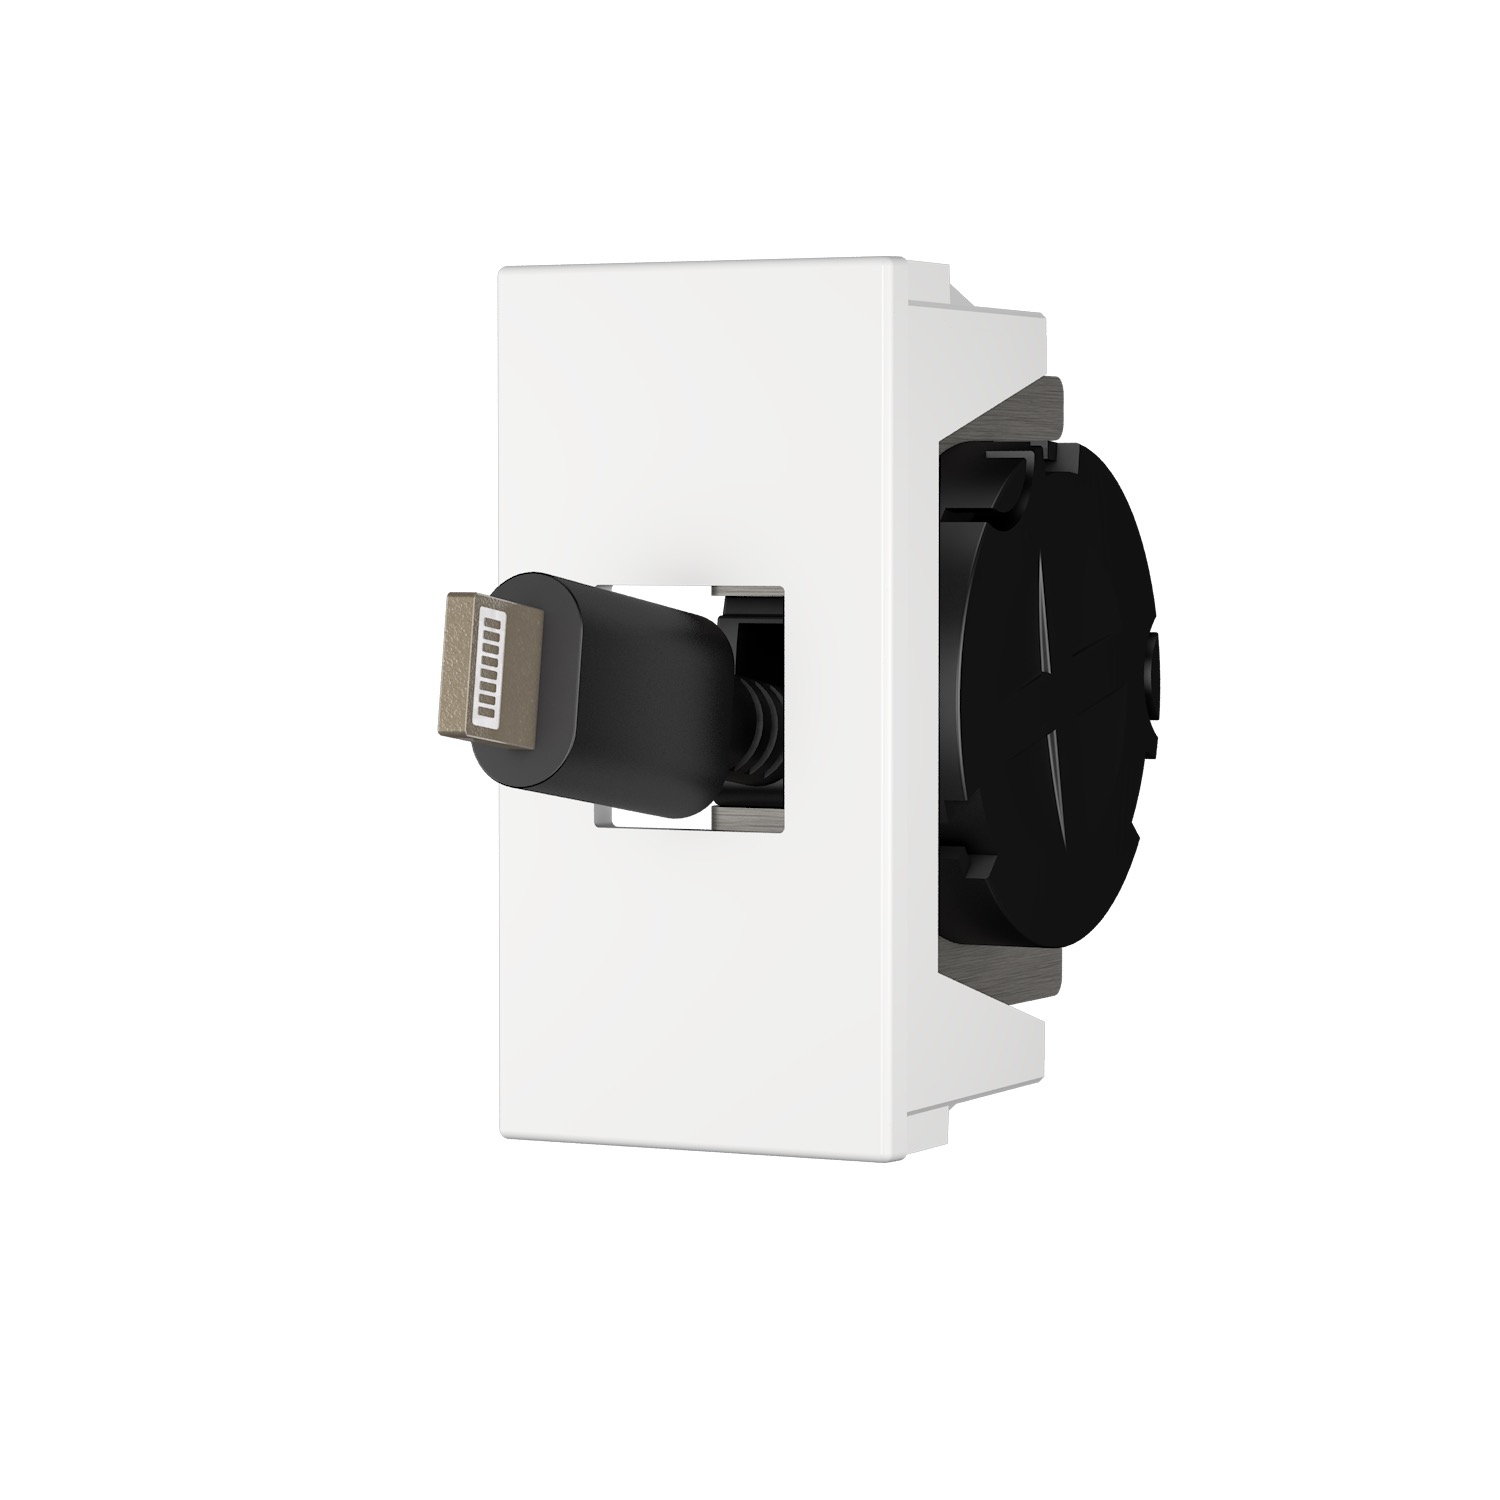 Kindermann Konnect flex 45 click Anschlussblende USB C - ausziehbare Kabelpeitsche 35-40 cm - Halbblende - Weiß